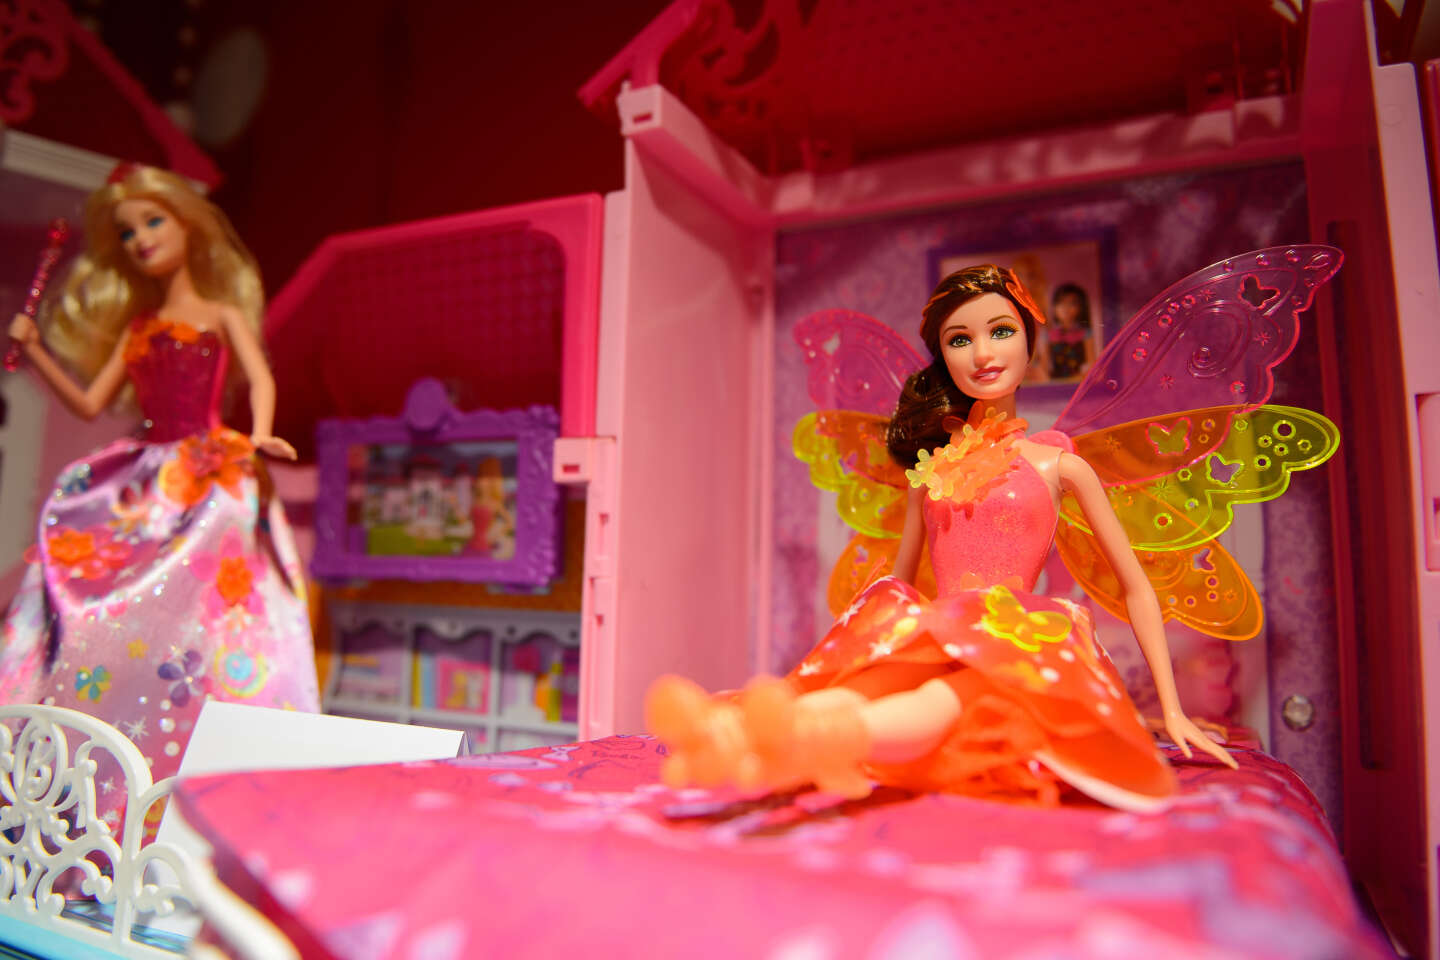 Découvrez 16 nouvelles Barbie qui célèbrent la diversité